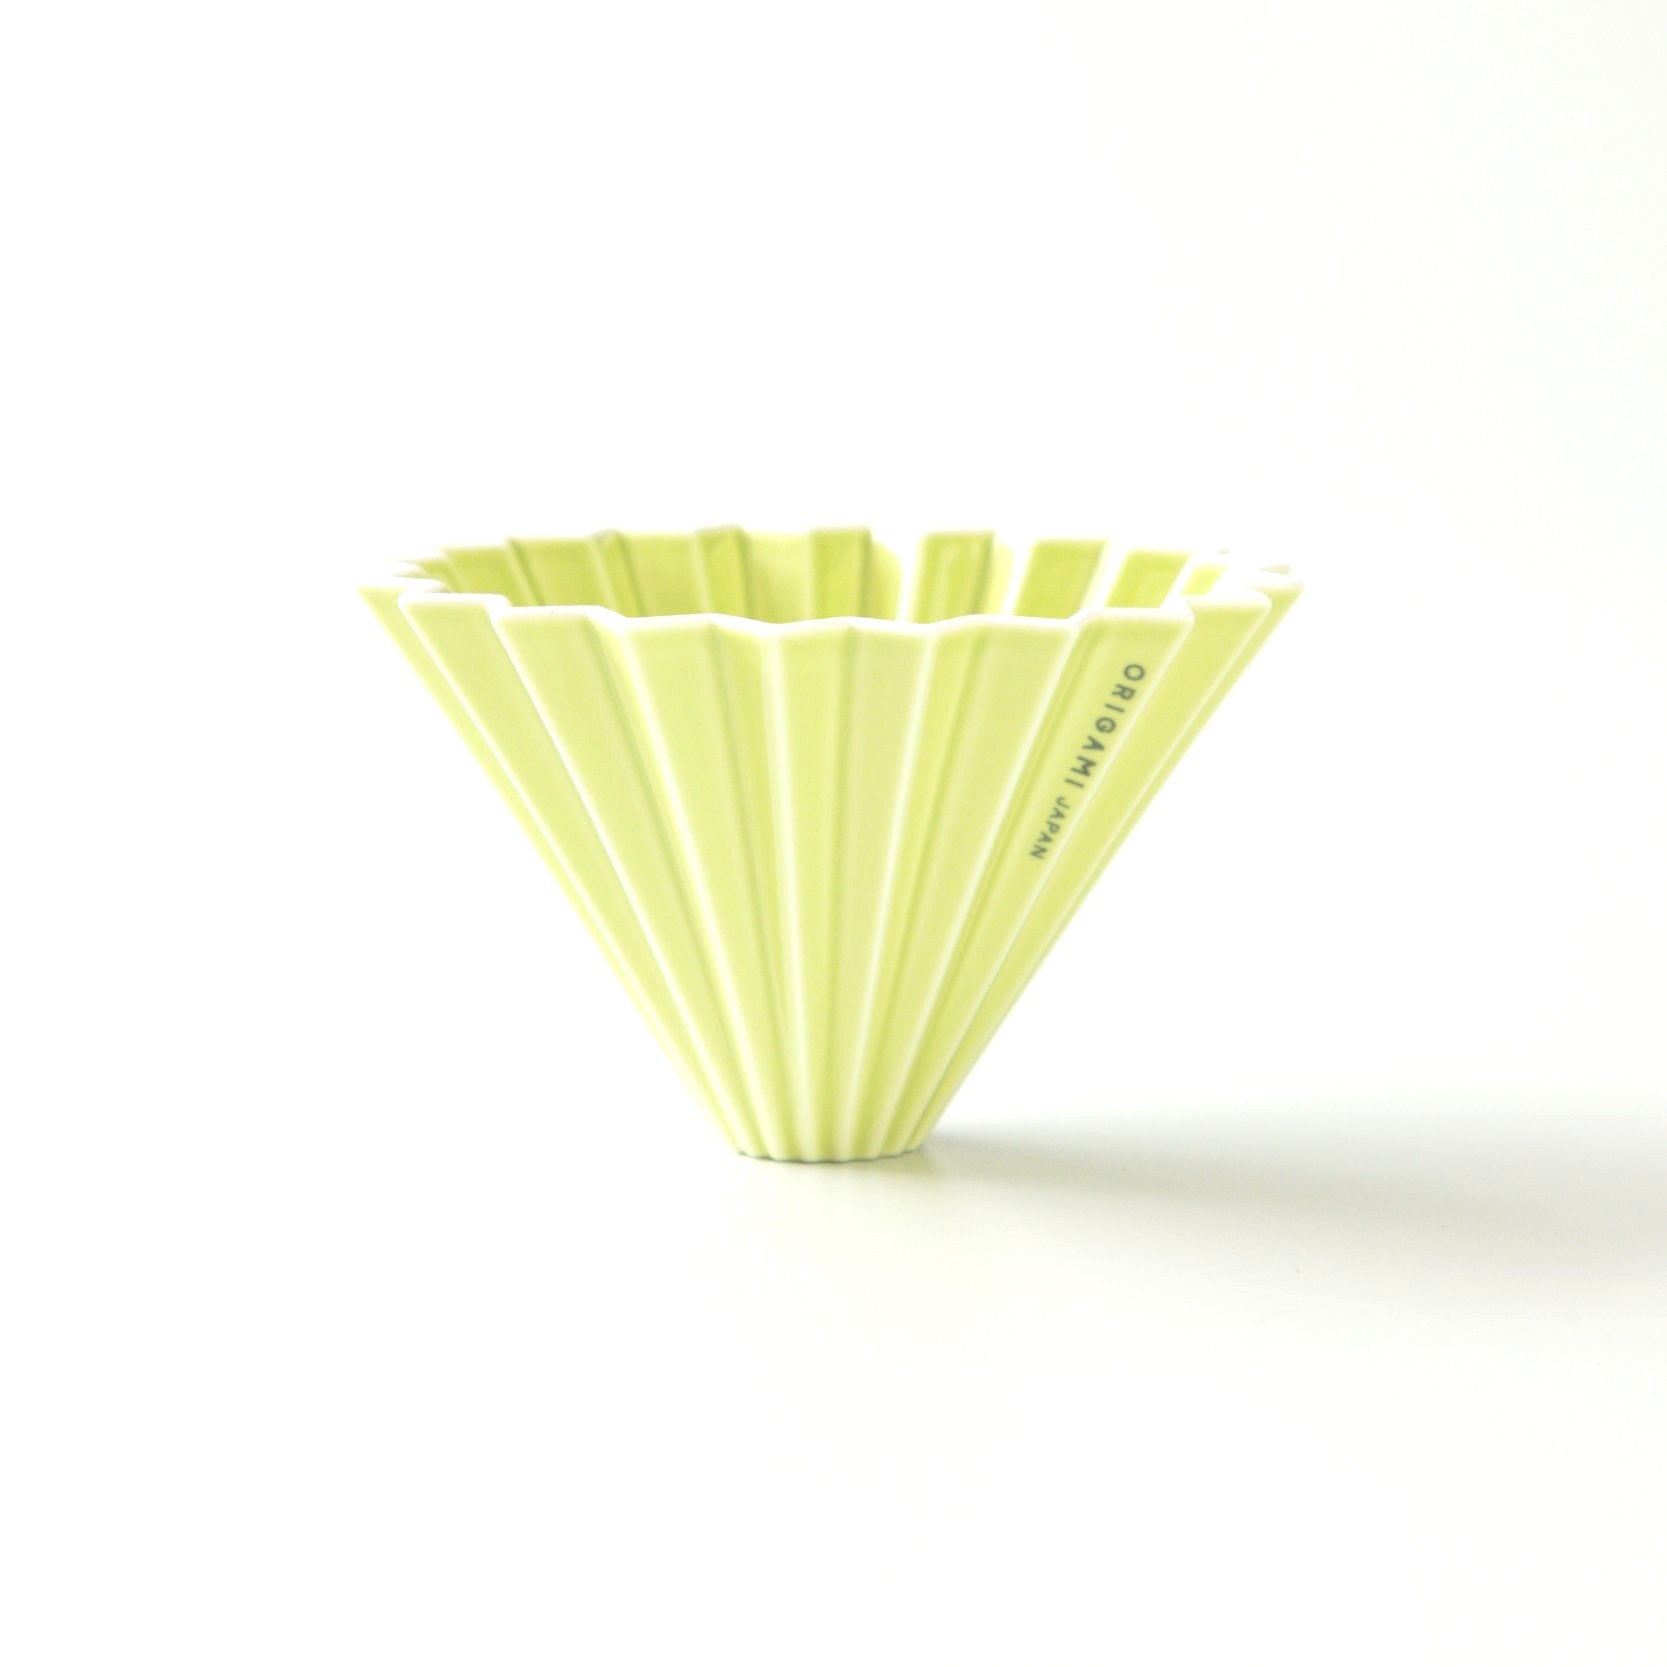 Origami medium ceramic dripper in green